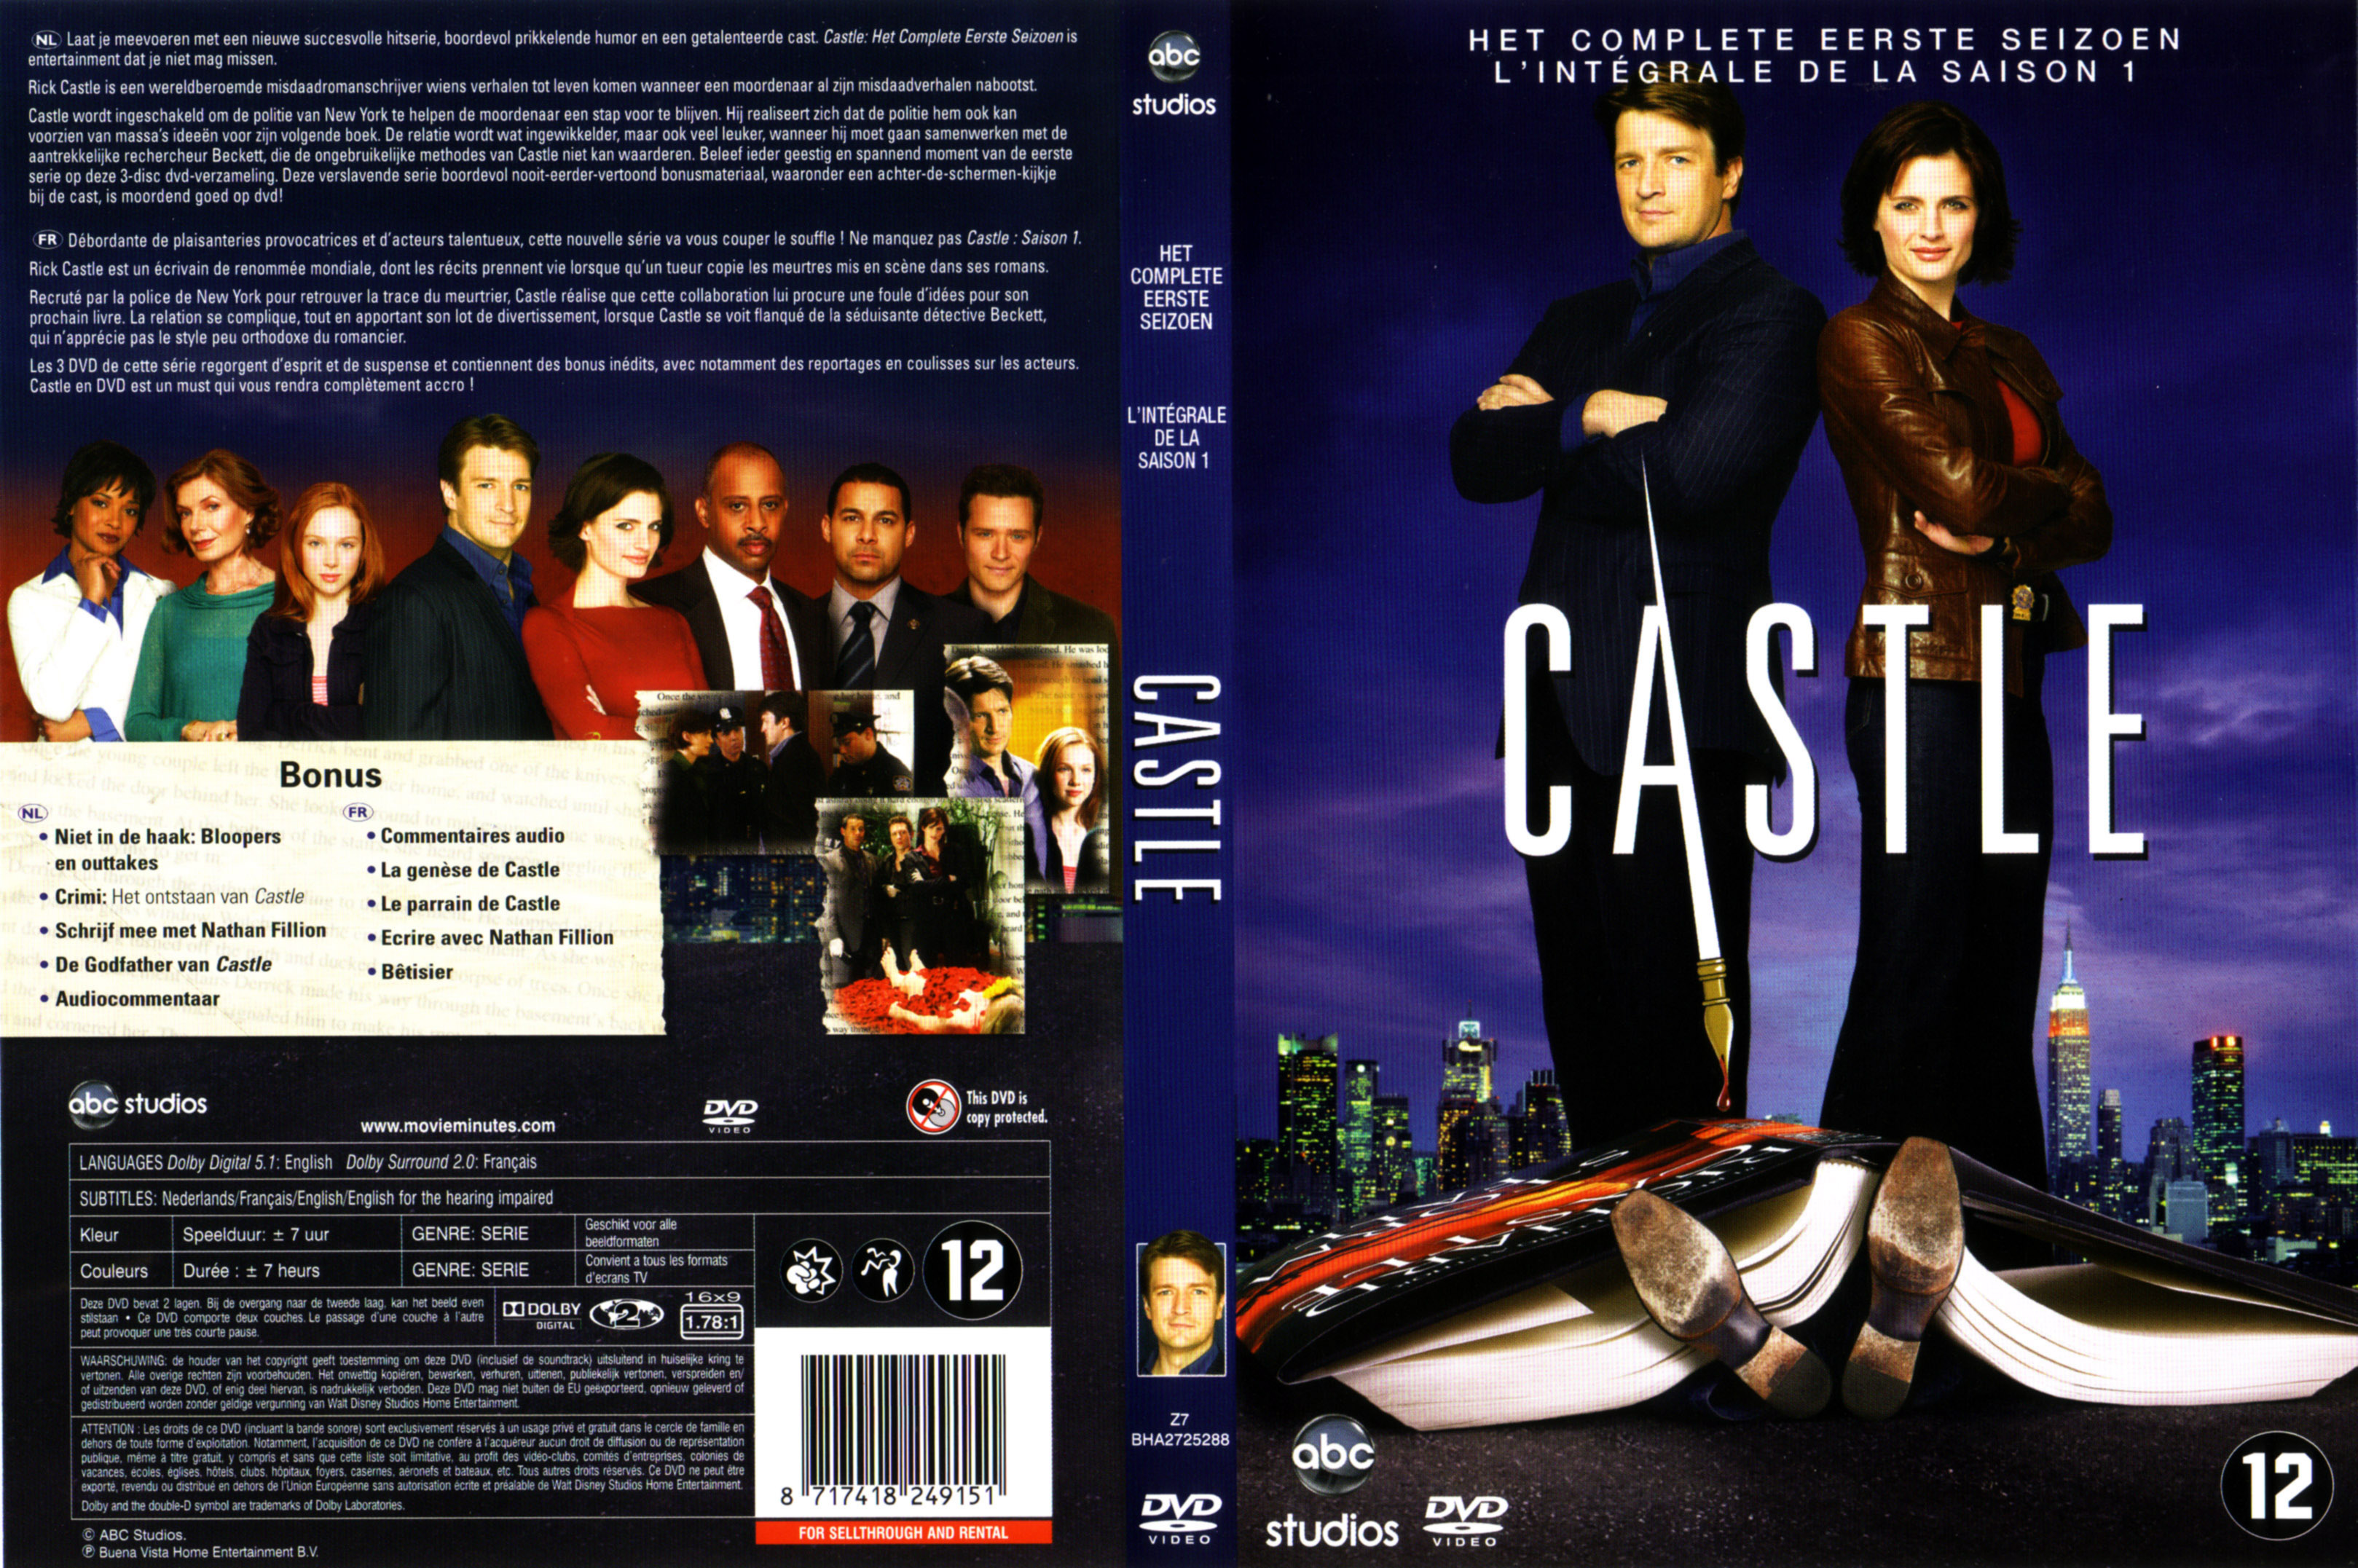 Jaquette DVD Castle Saison 1